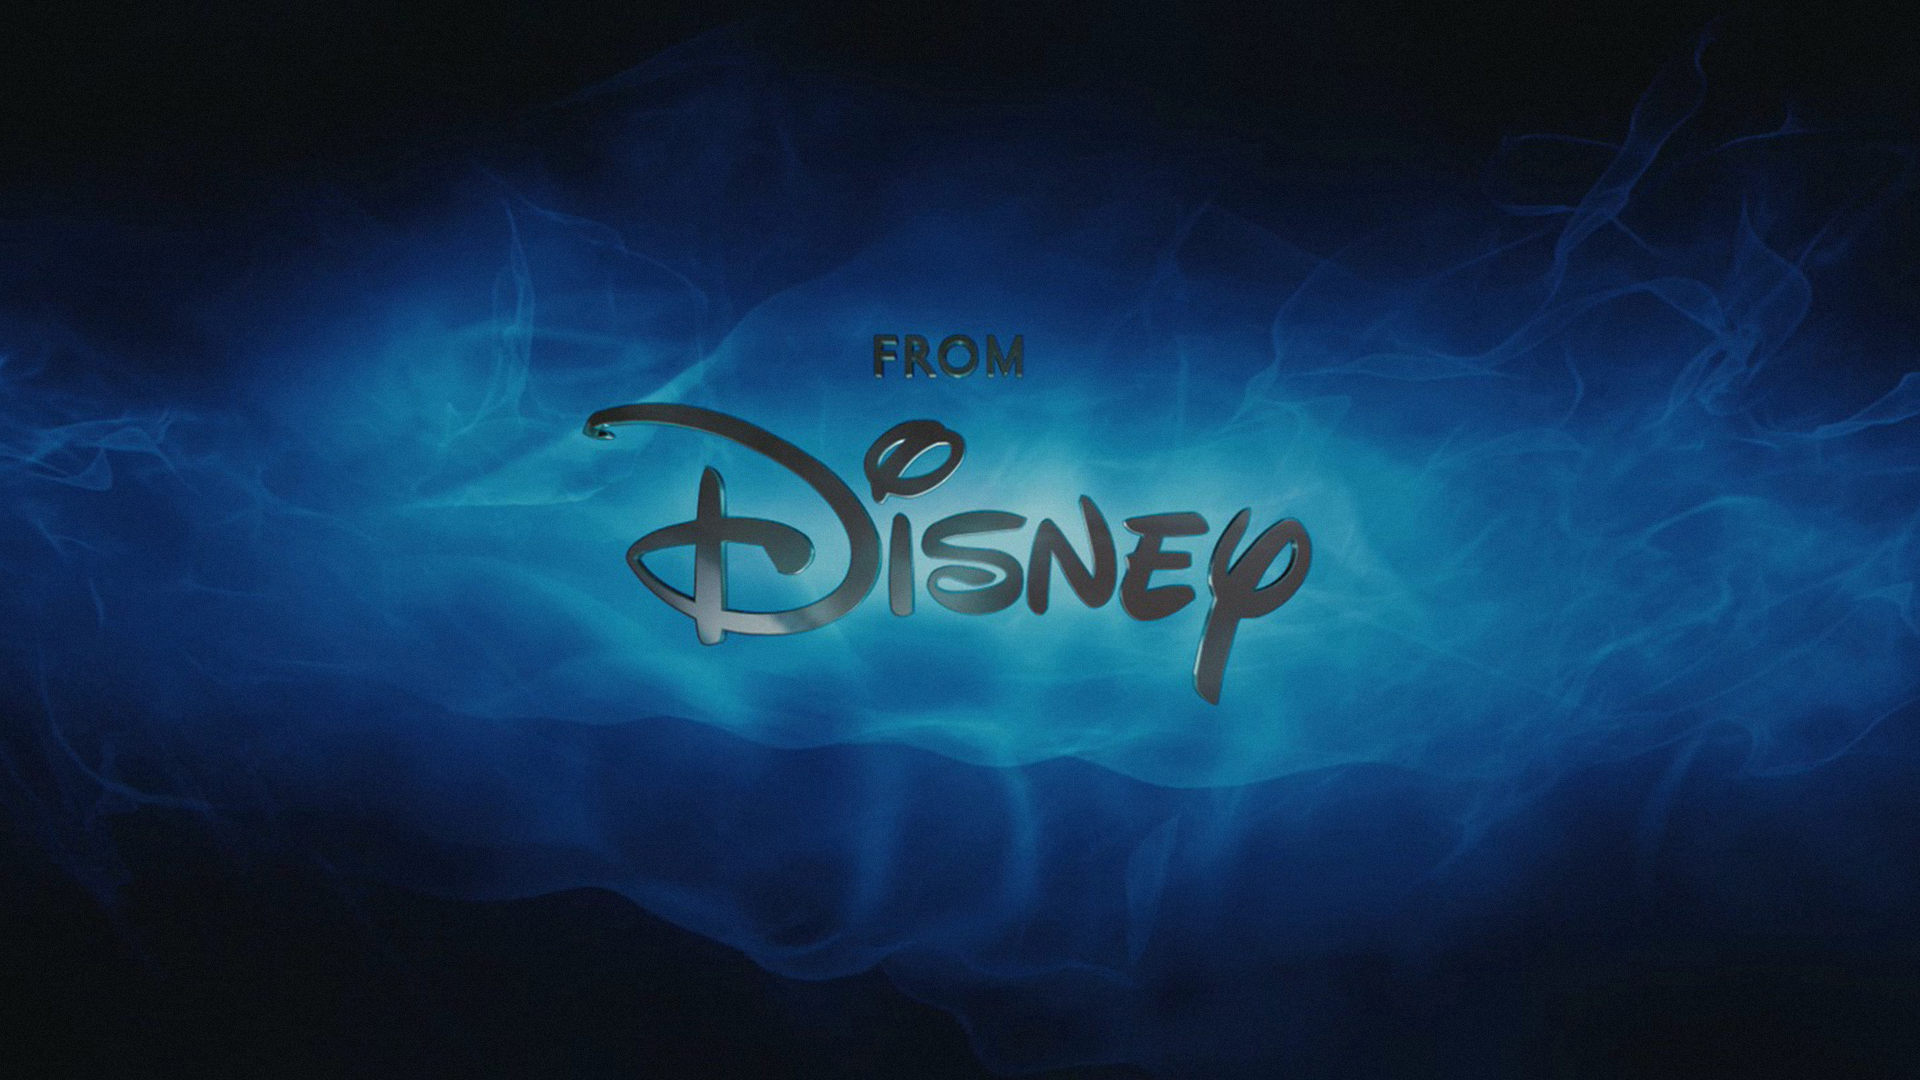 Những hình nền máy tính Disney HD miễn phí chắc chắn sẽ làm cho không gian trông thật sự sống động và đẹp mắt. Với chất lượng hình ảnh cao, các hình nền này sẽ khiến cho màn hình máy tính của bạn trở nên lung linh và đầy màu sắc hơn bao giờ hết. Các bạn có thể tải ngay những hình nền Disney HD miễn phí này để làm mới giao diện máy tính của mình.